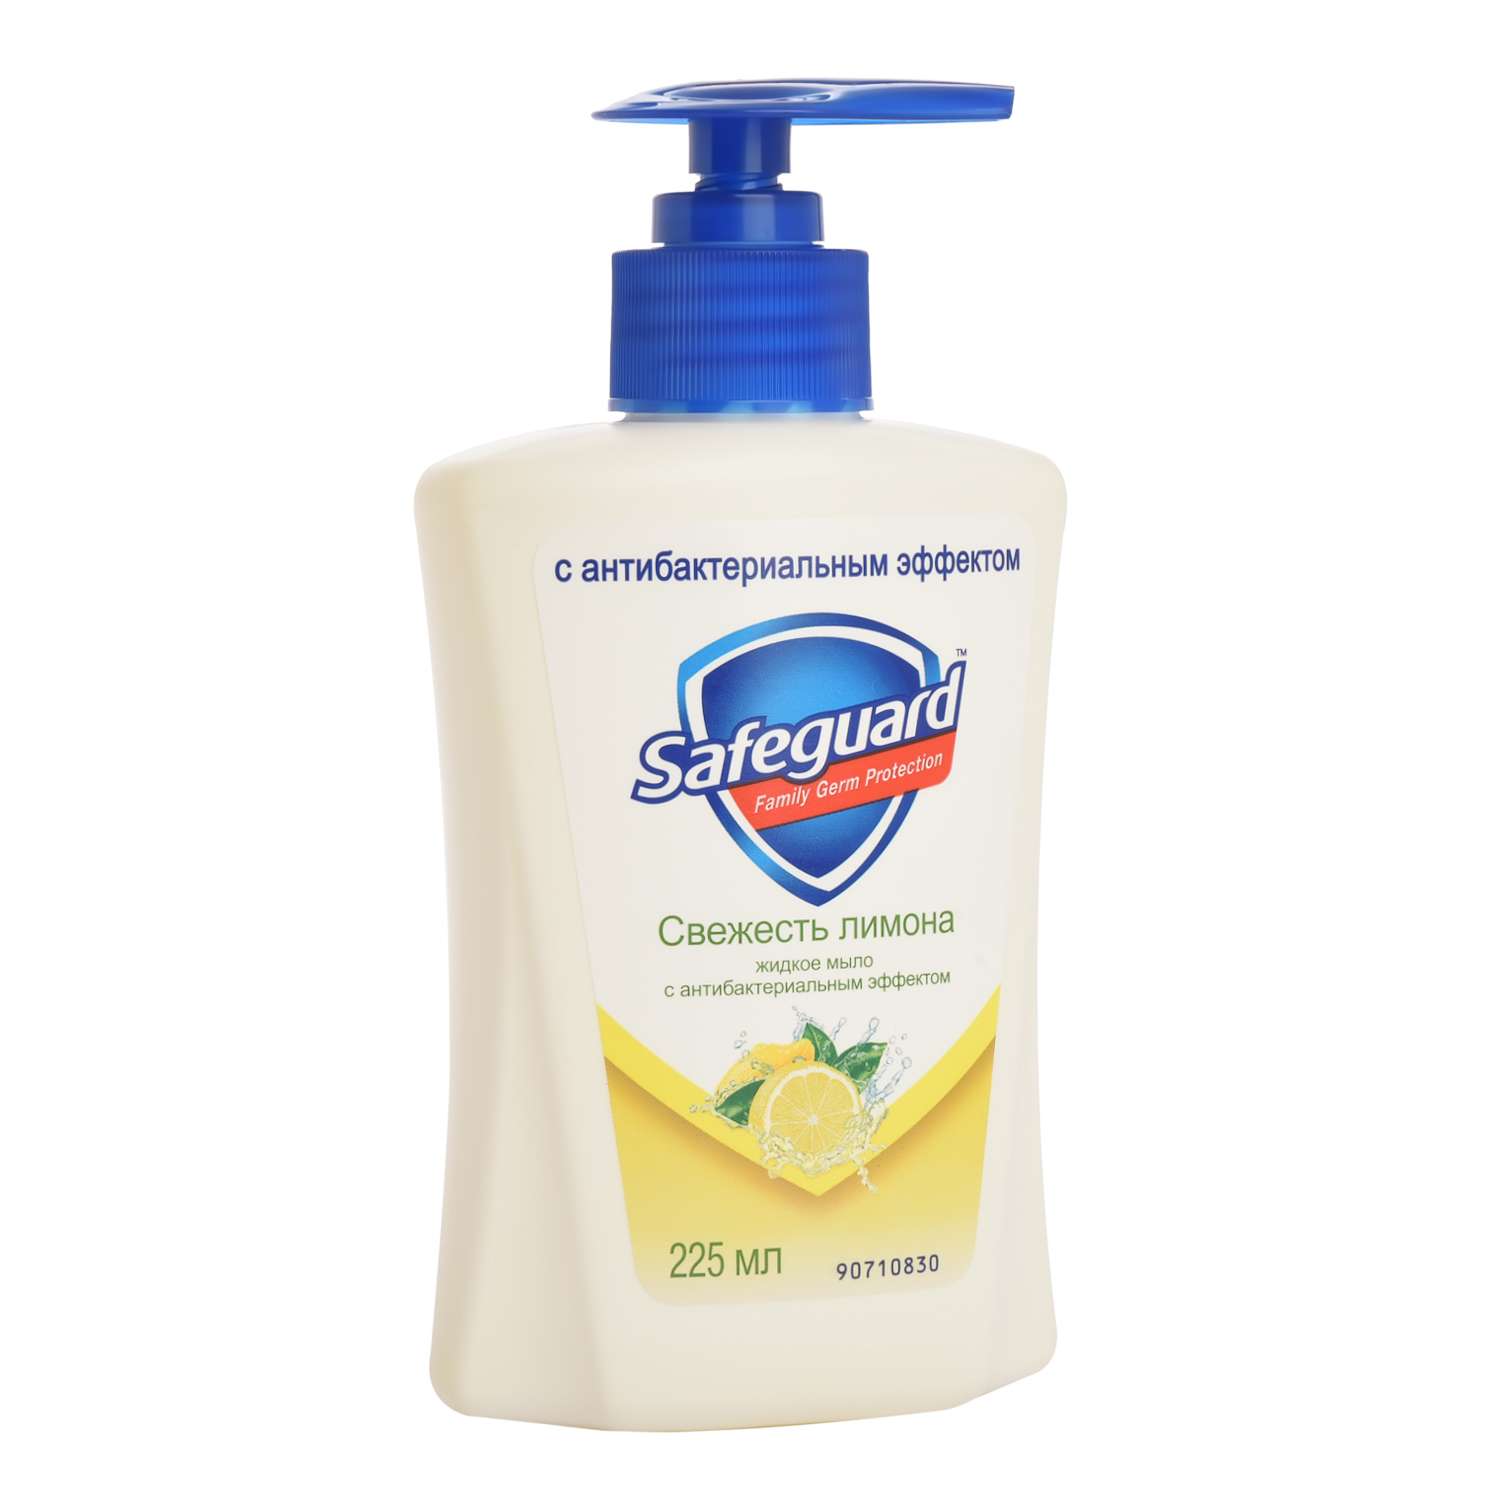 Жидкое мыло Safeguard антибактериальное Свежесть лимона 225 мл - фото 1